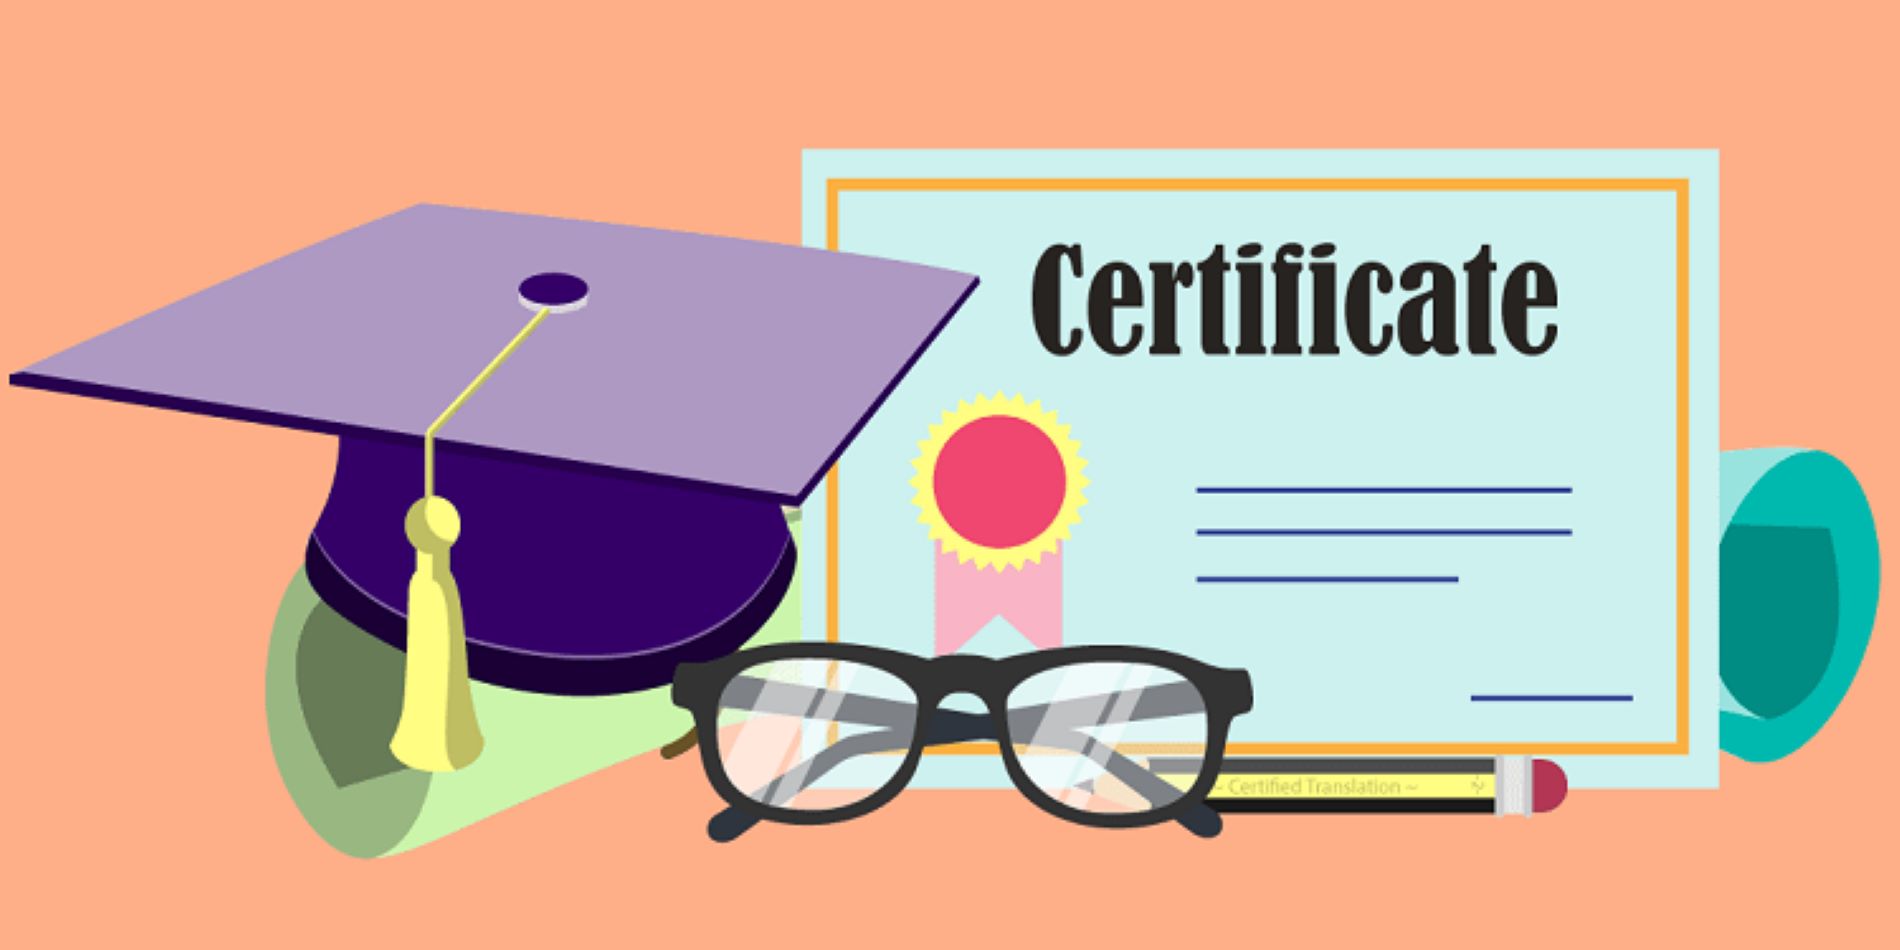 Certificate là tiêu chí nên có trong CV của một Marketing Manager